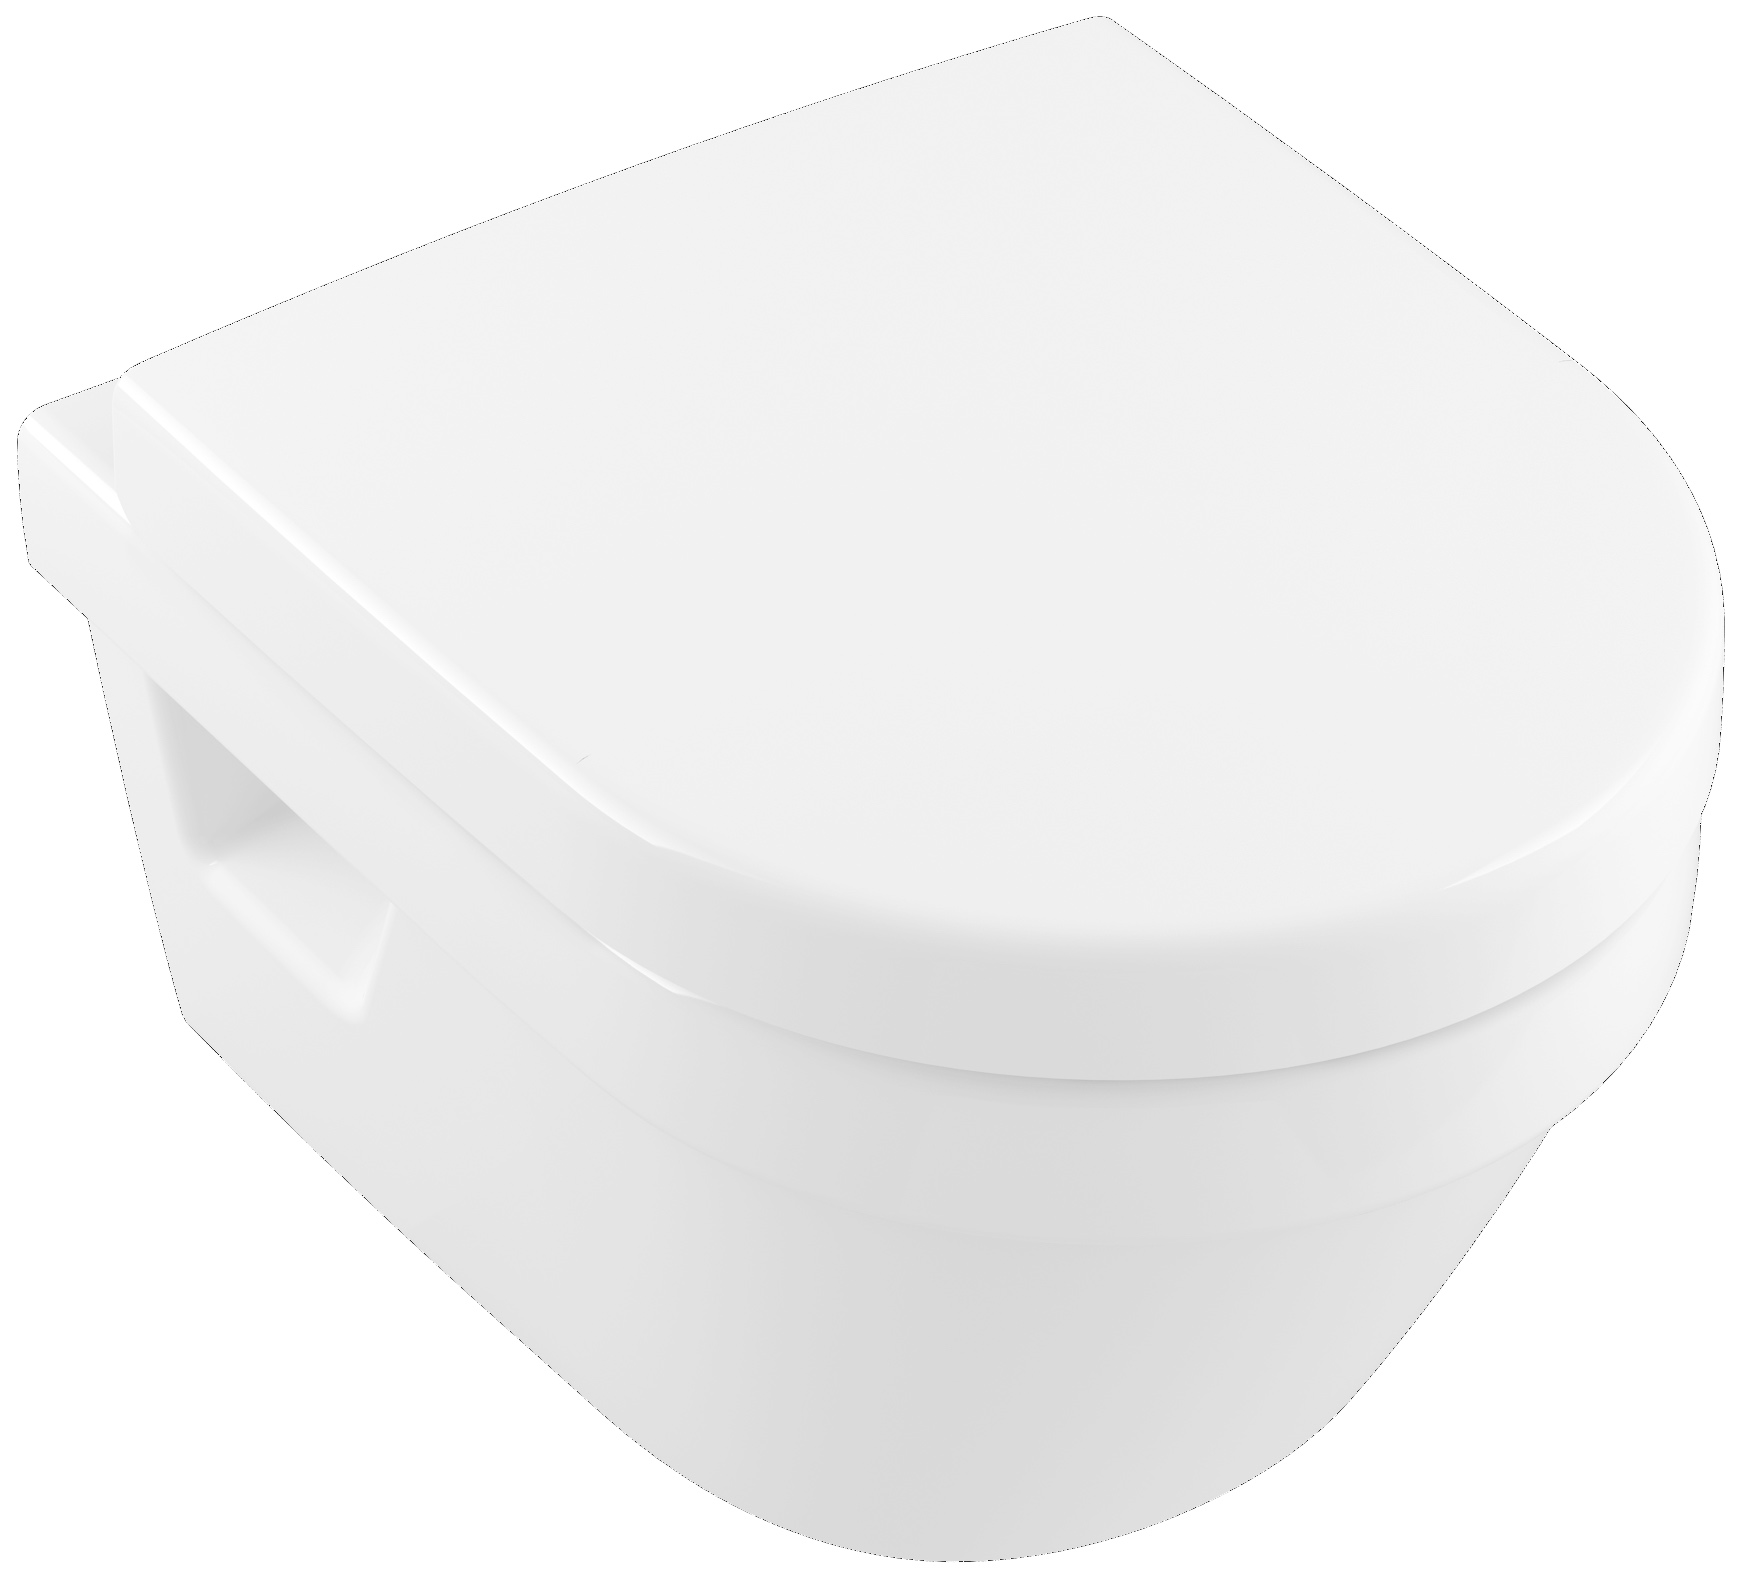 Tiefspül-WC Compact spülrandlos Architectura 4687R0, 350 x 480 x 340 mm, Oval, wandhängend, Abgang waagerecht, Weiß Alpin